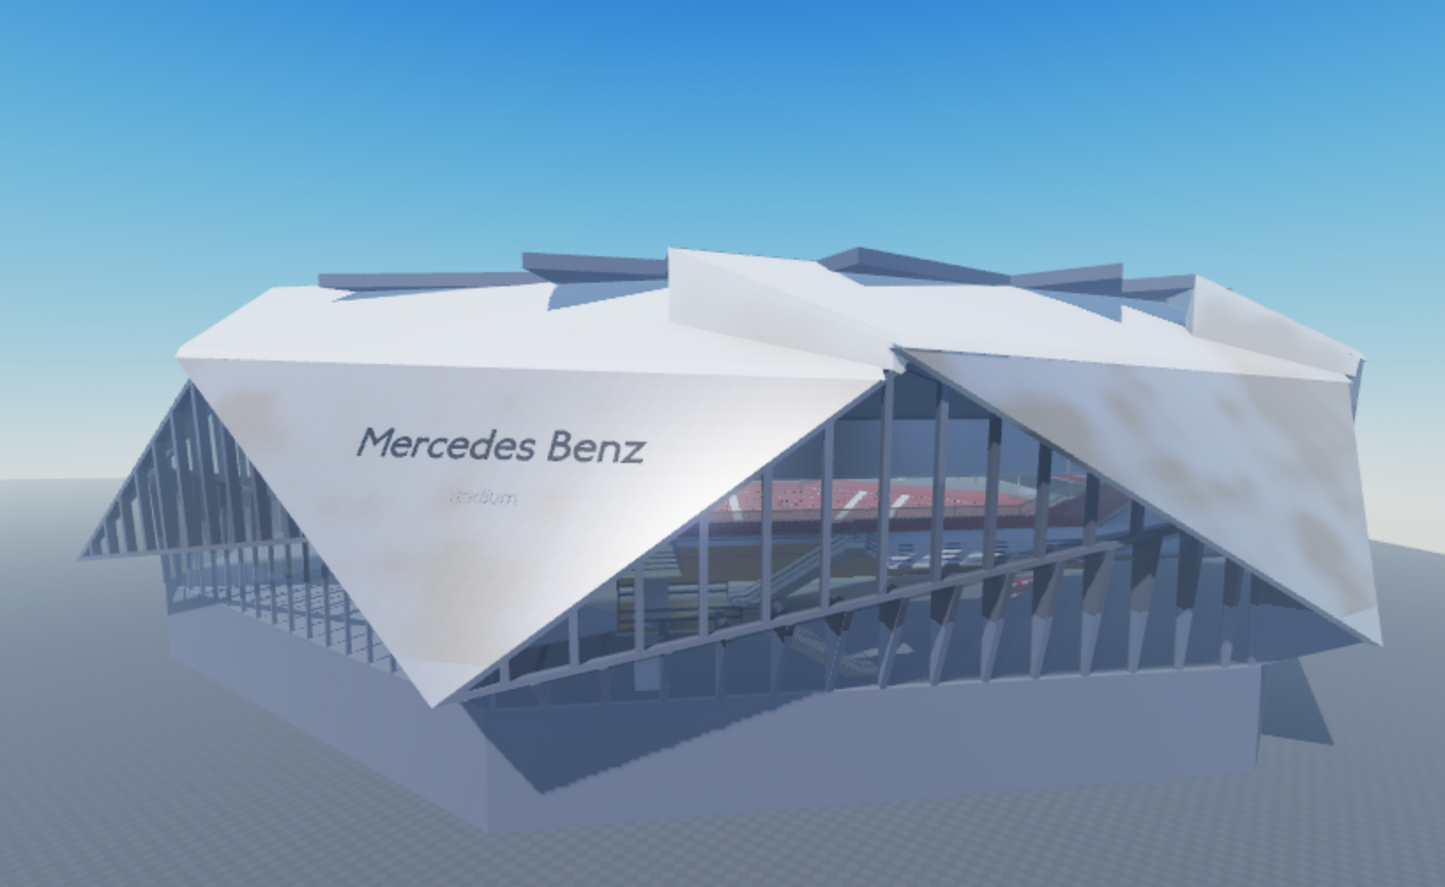 Mercede's Benz Stadium - Venue